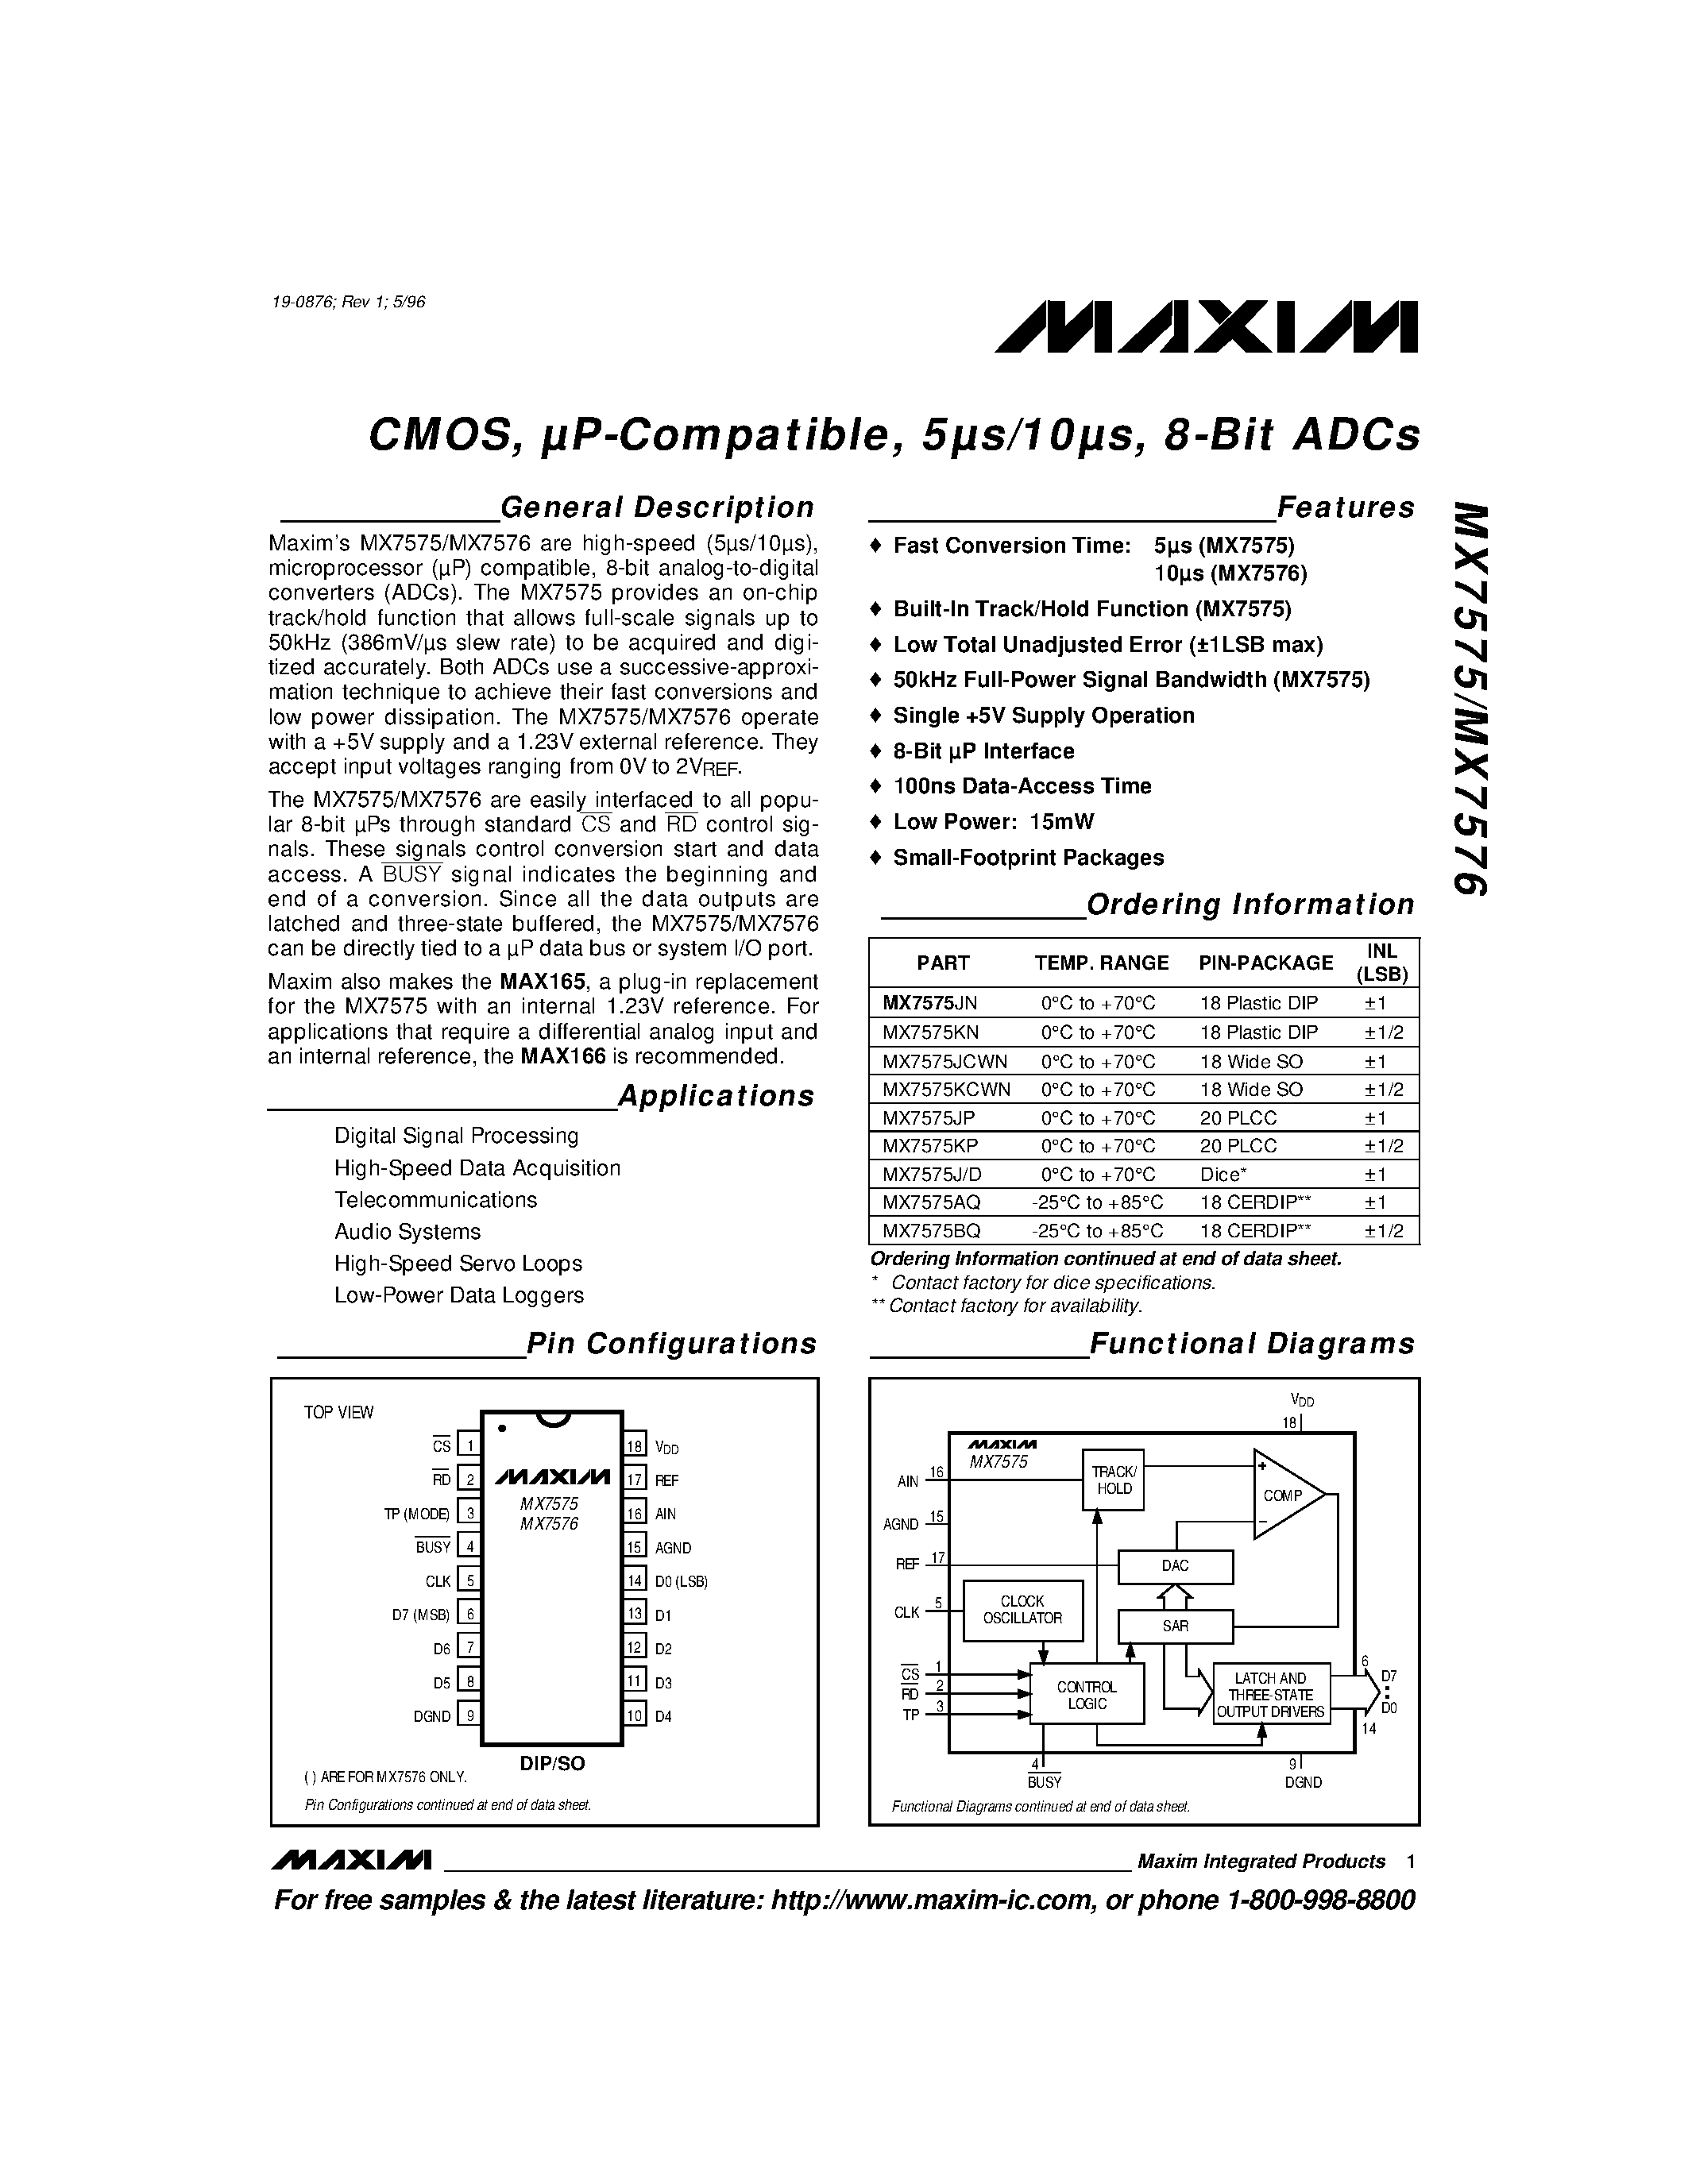 Datasheet MX7576D - CMOS / uP-Compatible / 5s/10s / 8-Bit ADCs page 1